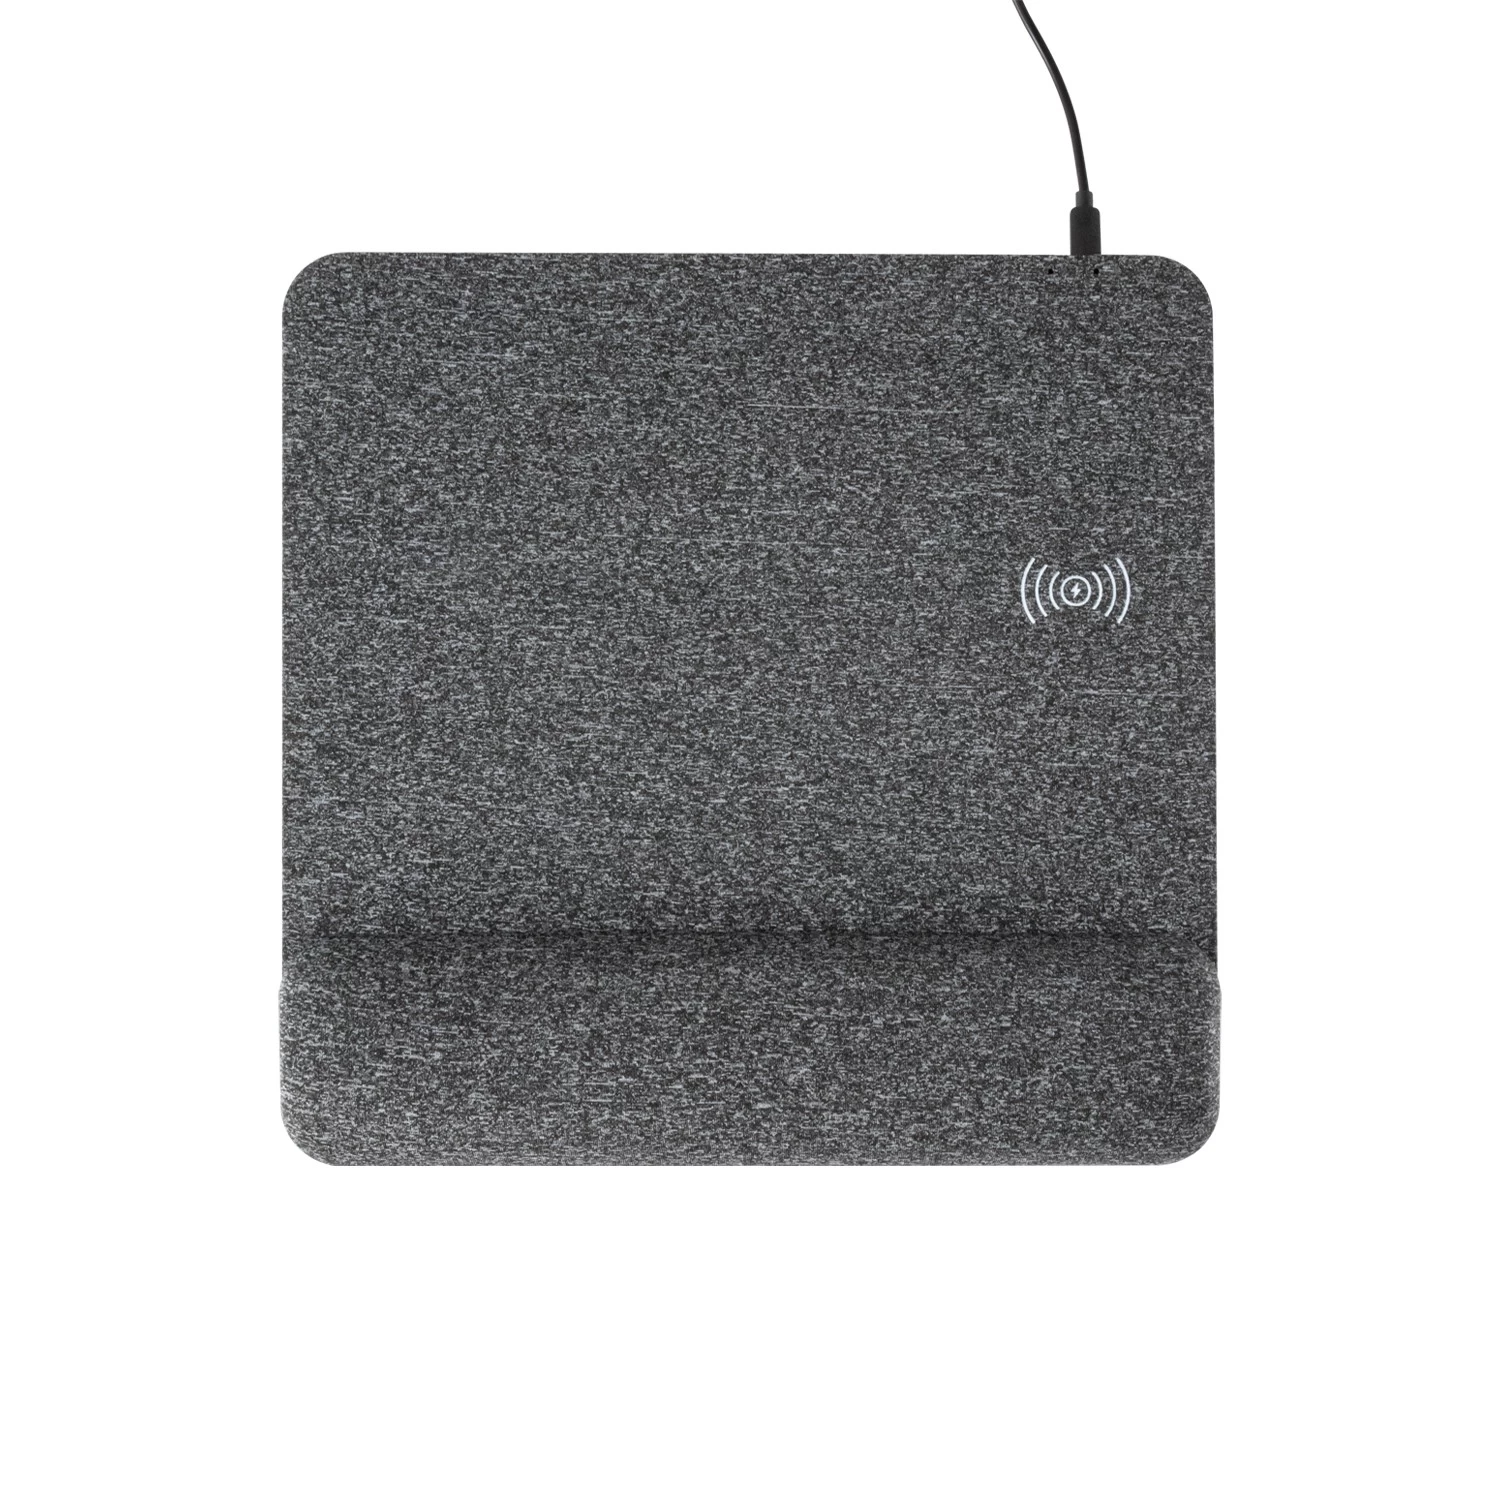 Chine Musthong Nouveau Design Tapis de souris de charge sans fil rapide avec repose-poignet en mousse à mémoire de soutien et base antidérapante pour ordinateur portable de bureau (MH-D86) fabricant